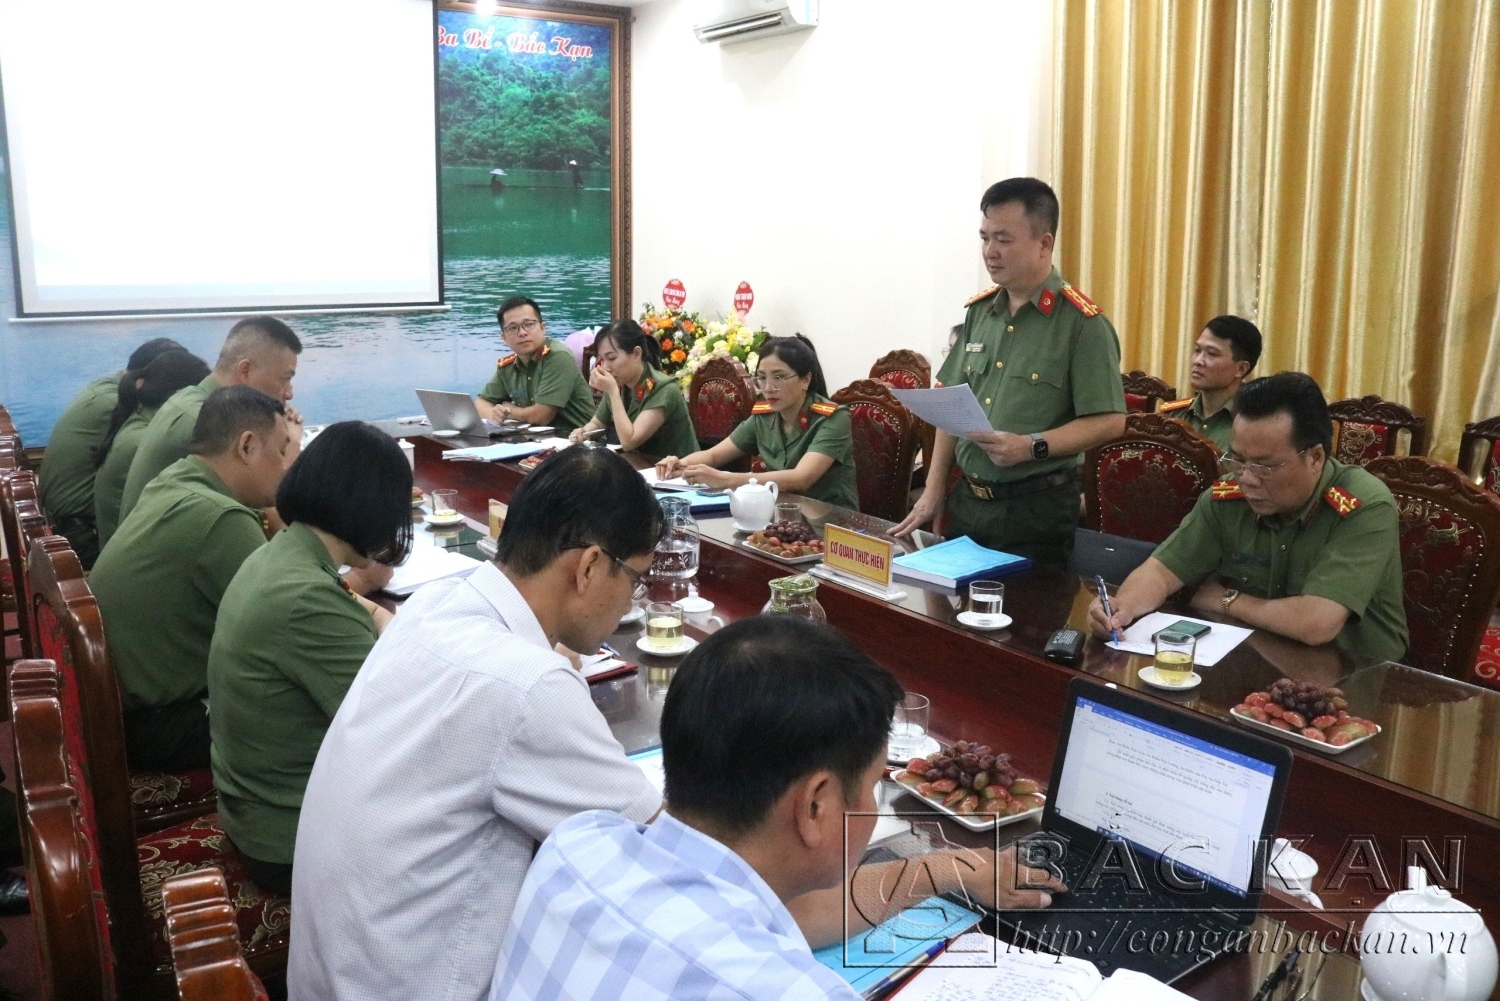 Đại tá, Ths Thăng Quang Huy, Uỷ viên BTV Đảng uỷ, Phó Giám đốc Công an tỉnh chủ nhiệm đề tài báo cáo tổng kết đề tài